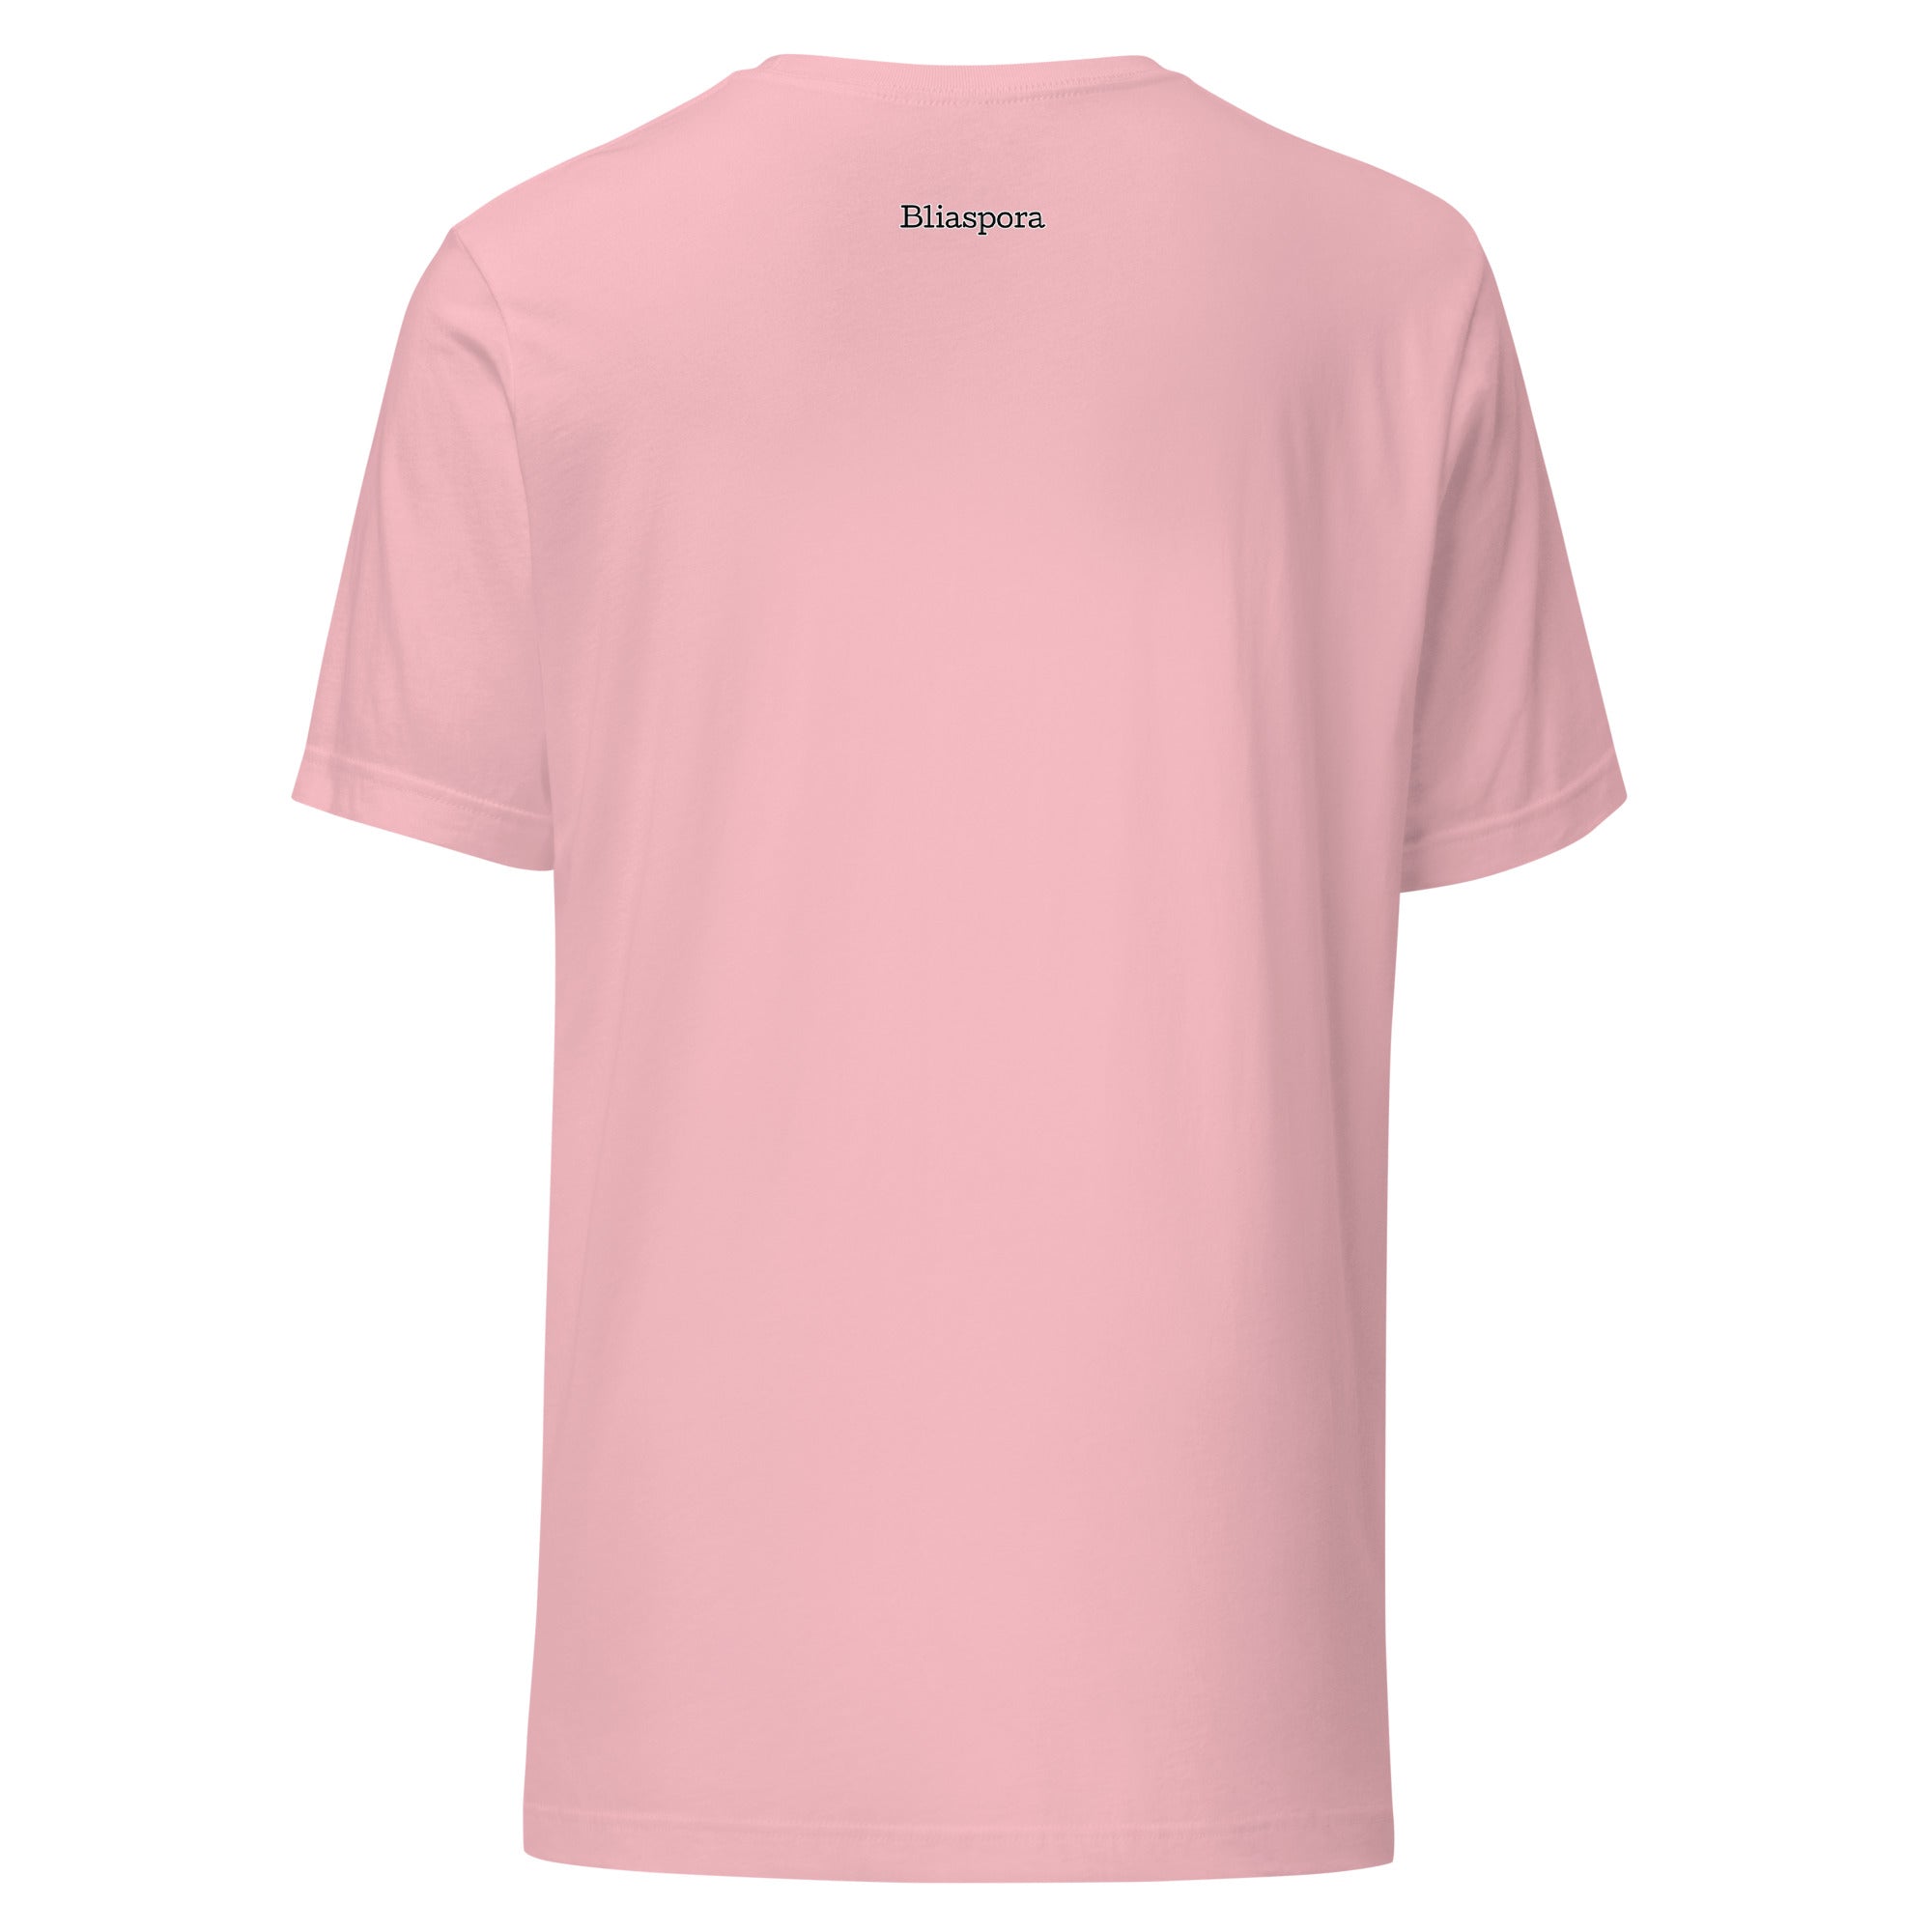 Juneteenth unisex t-shirt